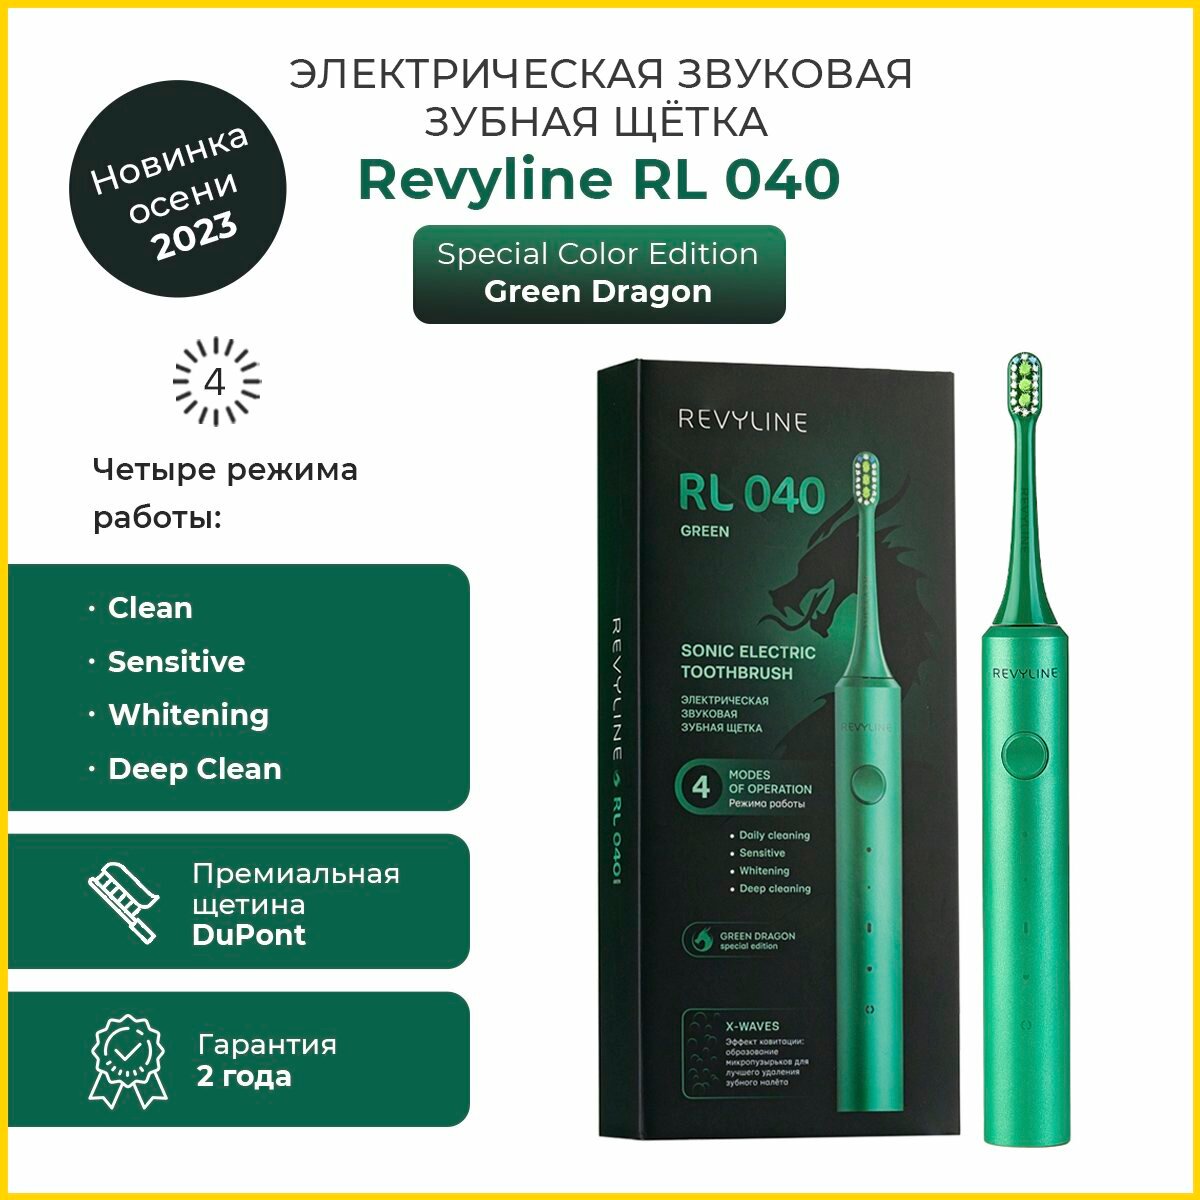 Электрическая звуковая щетка Revyline RL 040 Green Dragon